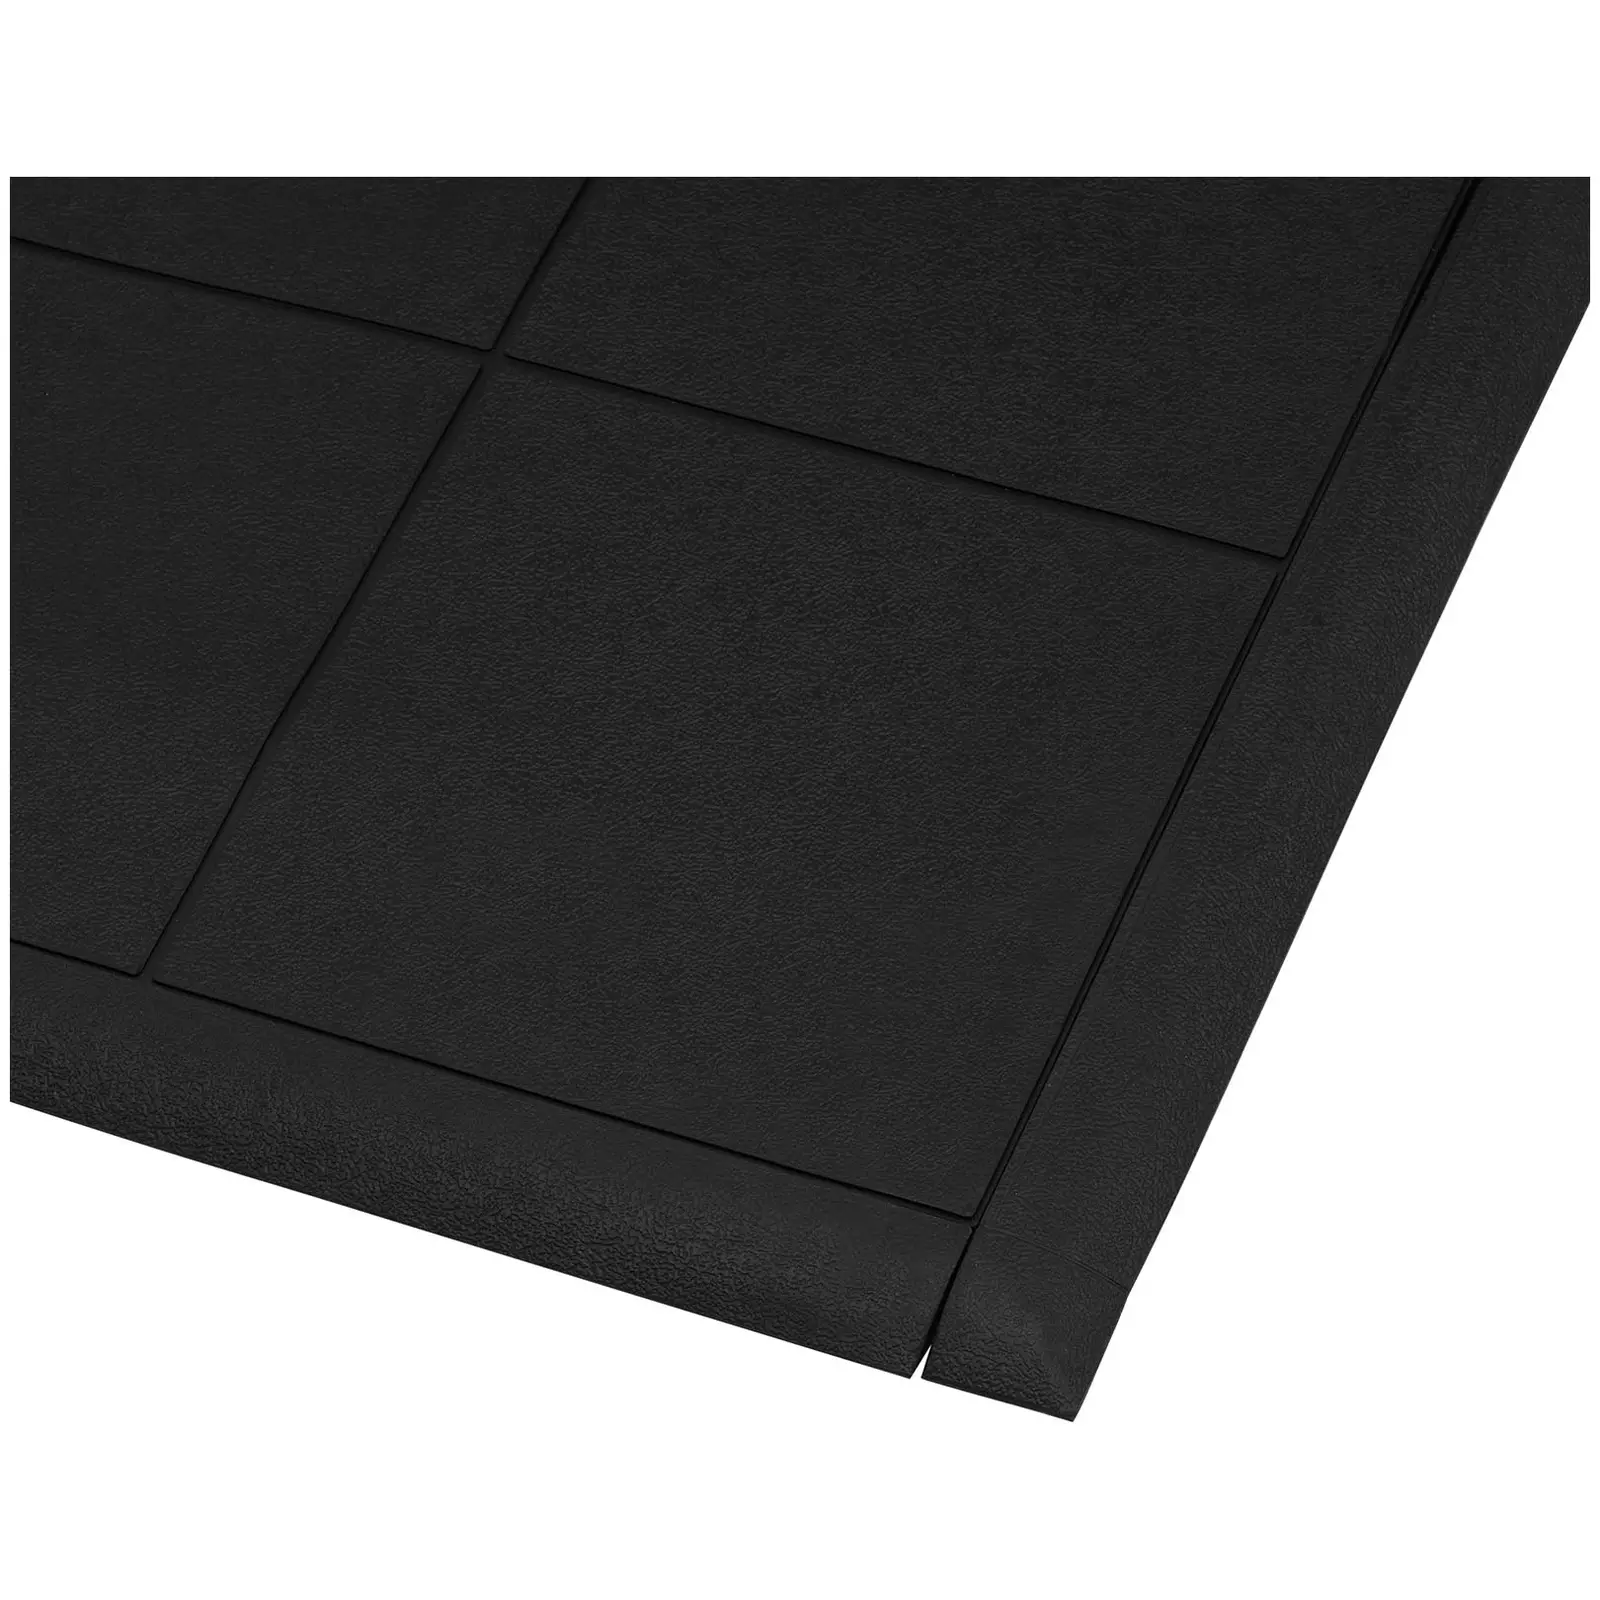 Záróprofil álláskönnyítő szőnyeghez - 975 x 72 mm - a 10030772-es cikkszámmal jelölt álláskönnyítő szőnyeghez